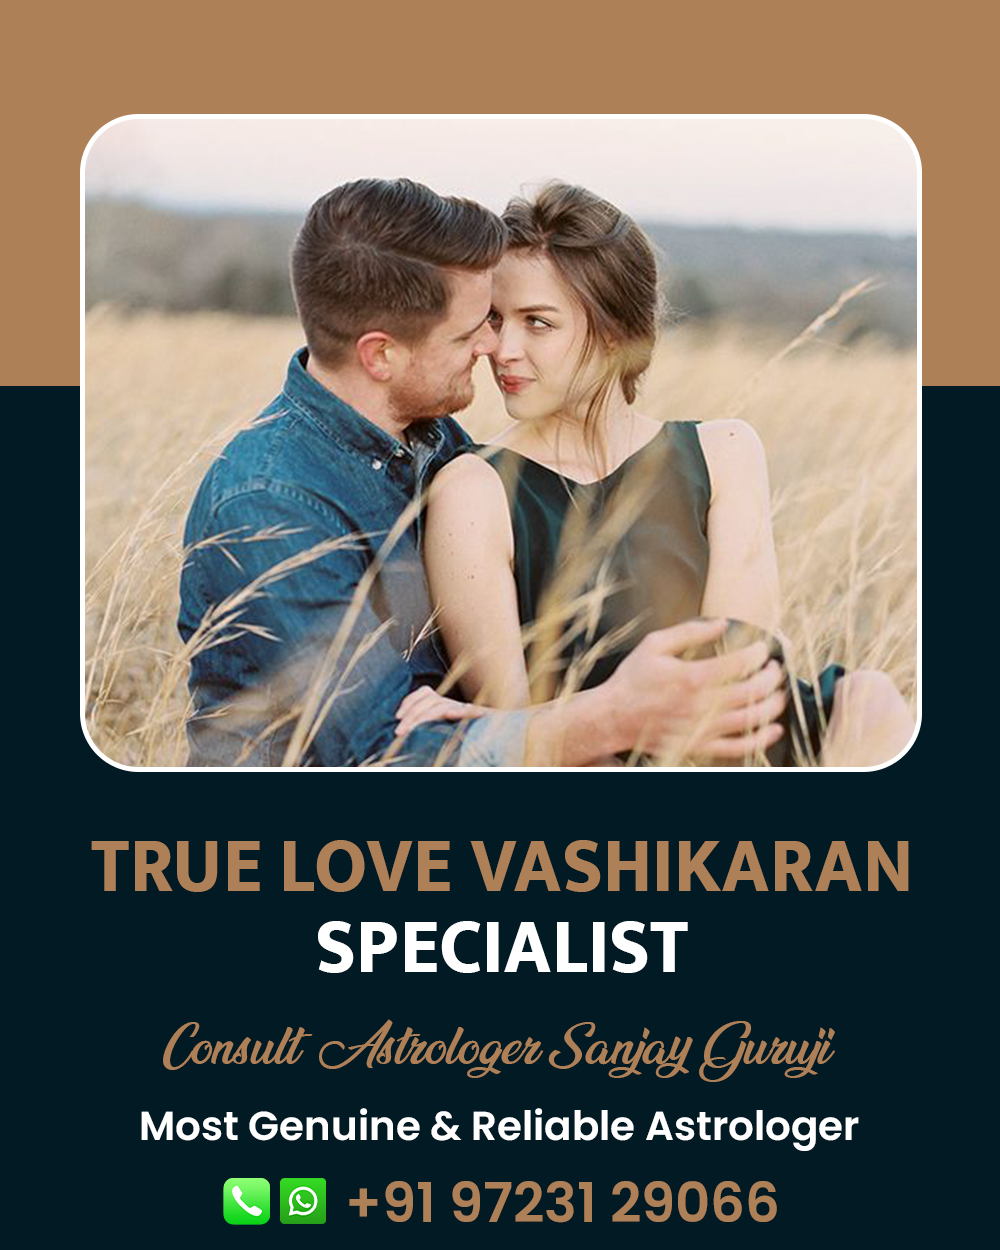 True Love Vashikaran Specialist